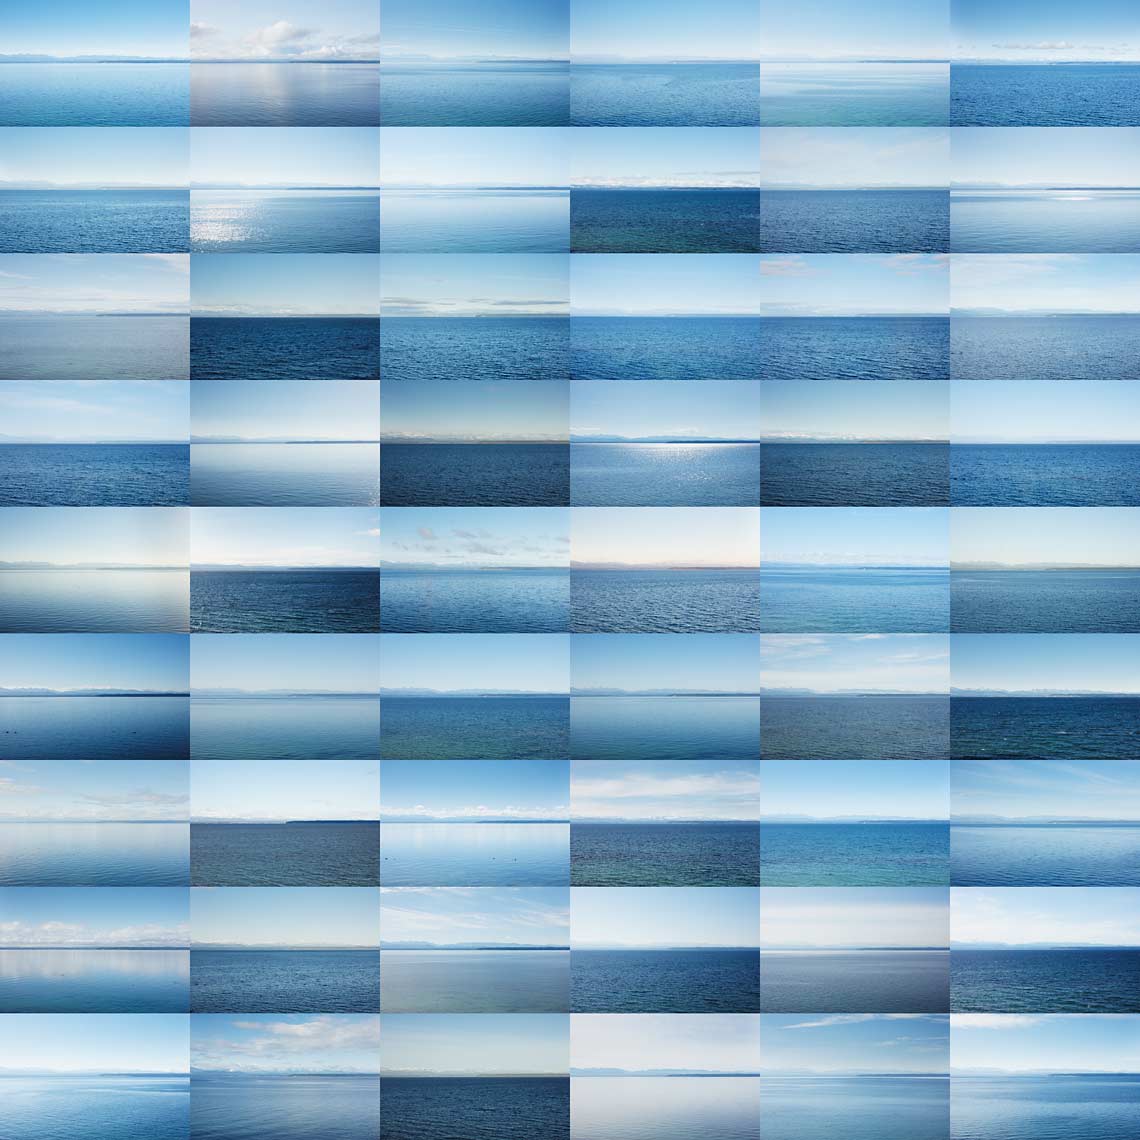 Blue Skies, 2012 to 2014